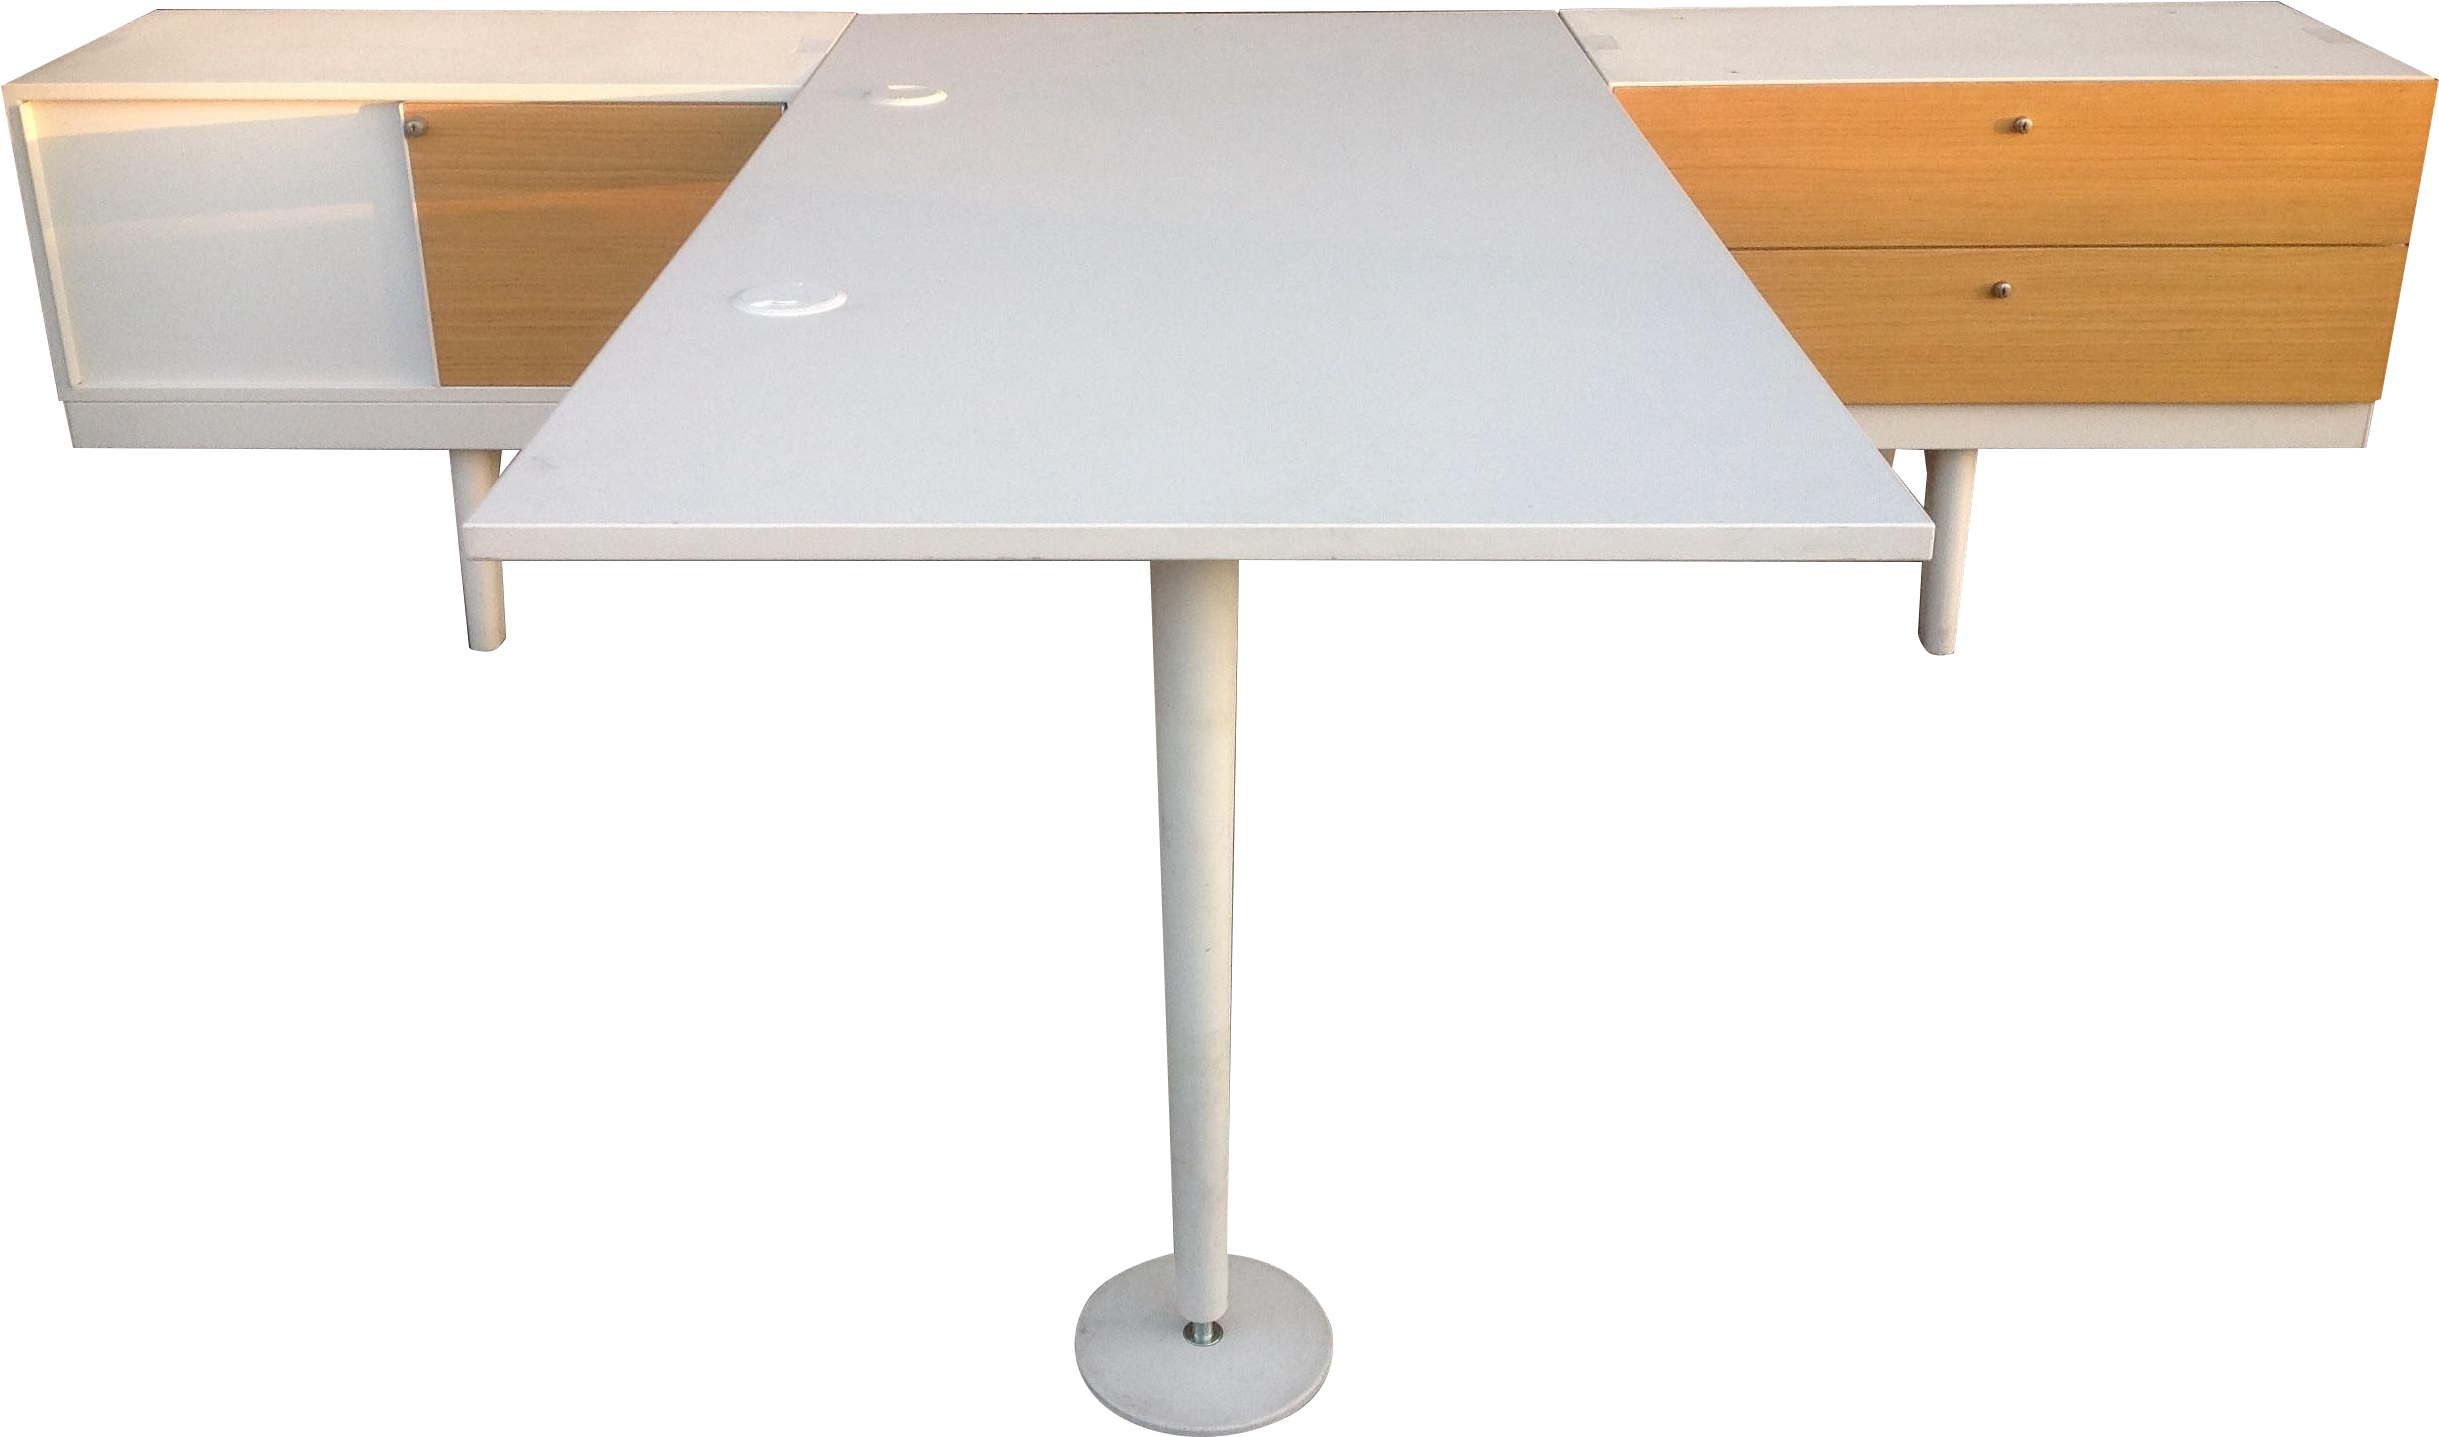 Desk (2592x1936)